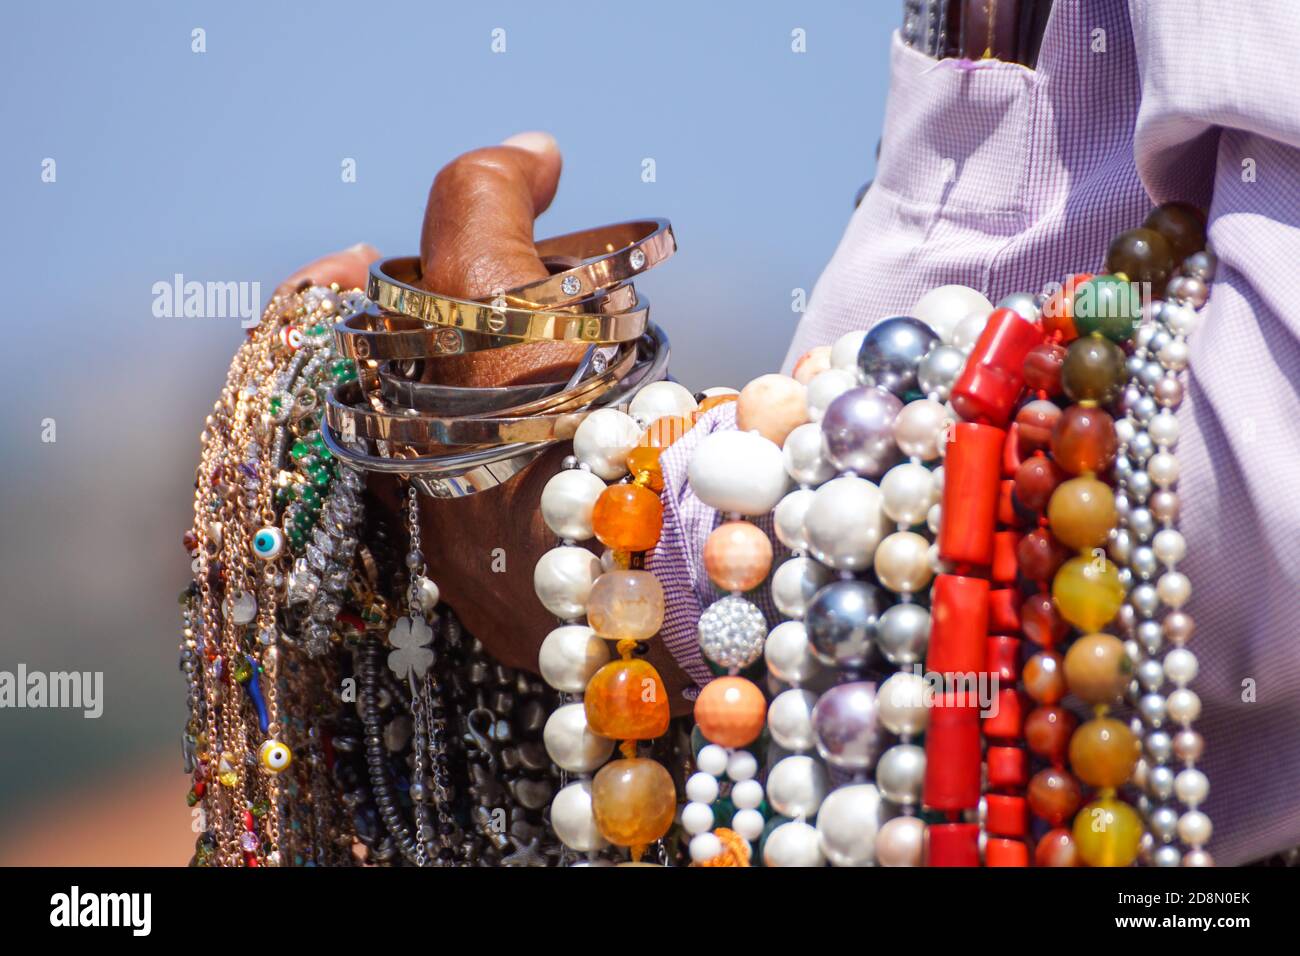 Cart Verkauf von typischen Souvenirs auf dem schönen kubanischen Strand . Stockfoto